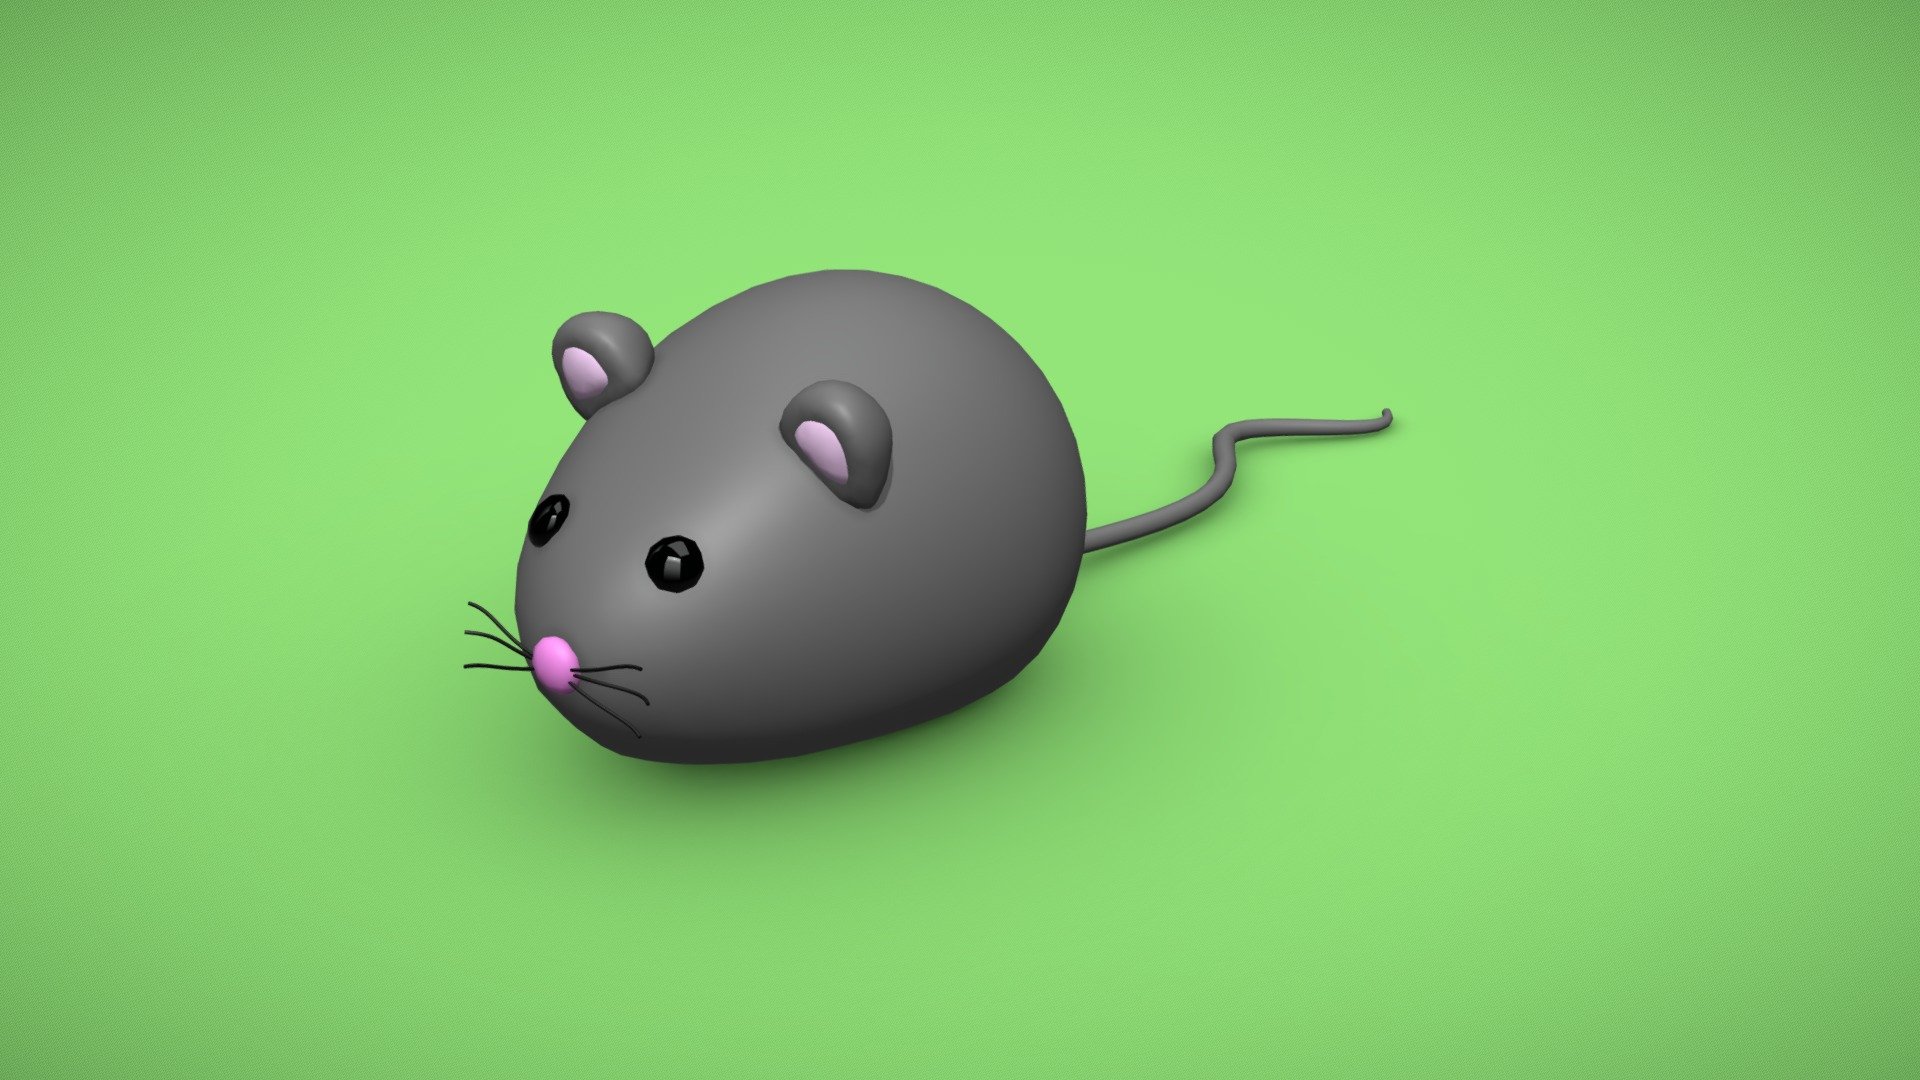 Cùng đón xem hình ảnh về chuột đáng yêu này. Với các tính năng tuyệt vời, chuột này thường được ưa chuộng để sử dụng cho nhiều mục đích khác nhau và sẽ khiến bạn cười tươi như đón giáng sinh.